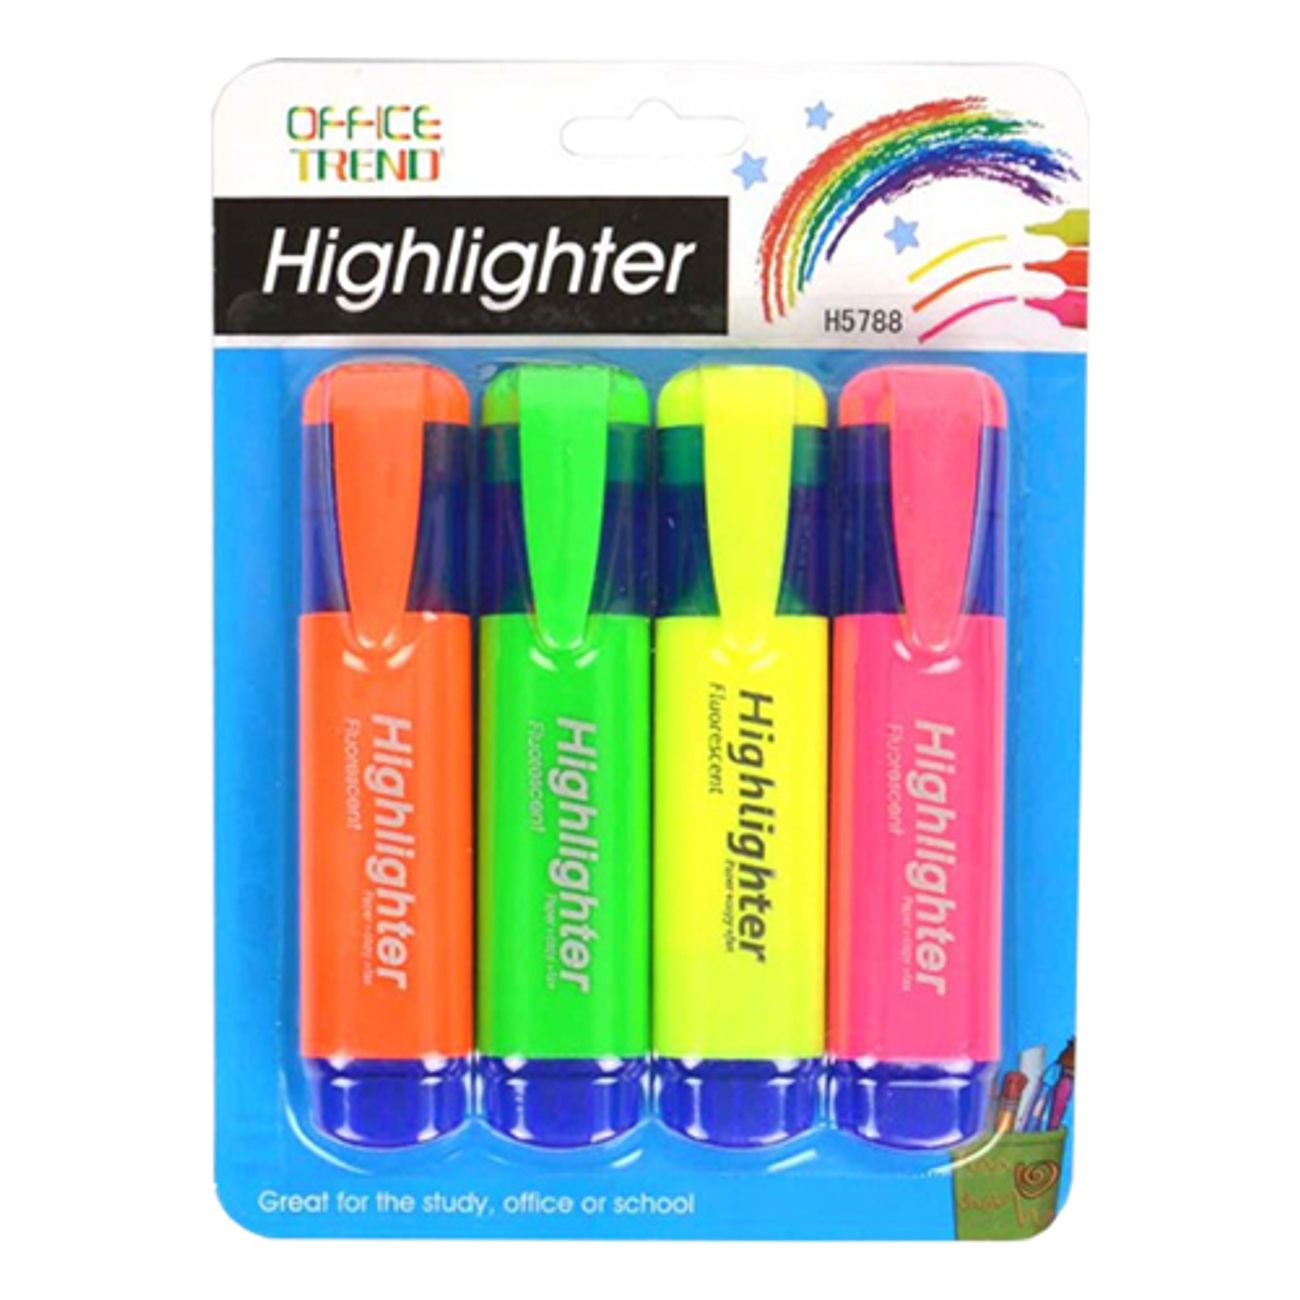 highlighter-markeringspennor-1